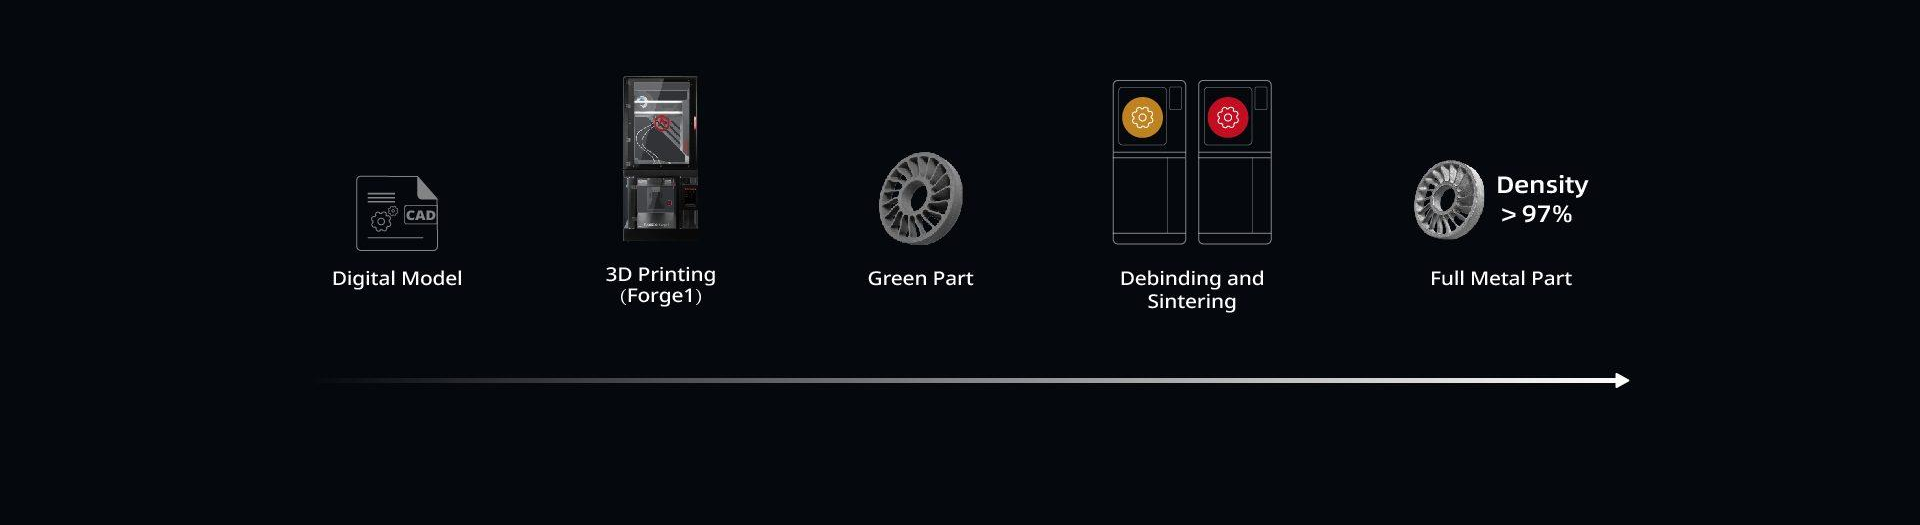 Het digitale model wordt 3D geprint op de Raise3D Forge1. Het geprinte object heet Green Part. Het Green Part wordt ontdaan van het kunststof (debinden) en wordt in de sinteroven tot een volledig metalen onderdeel met een dichtheid > 97% getransformeerd.